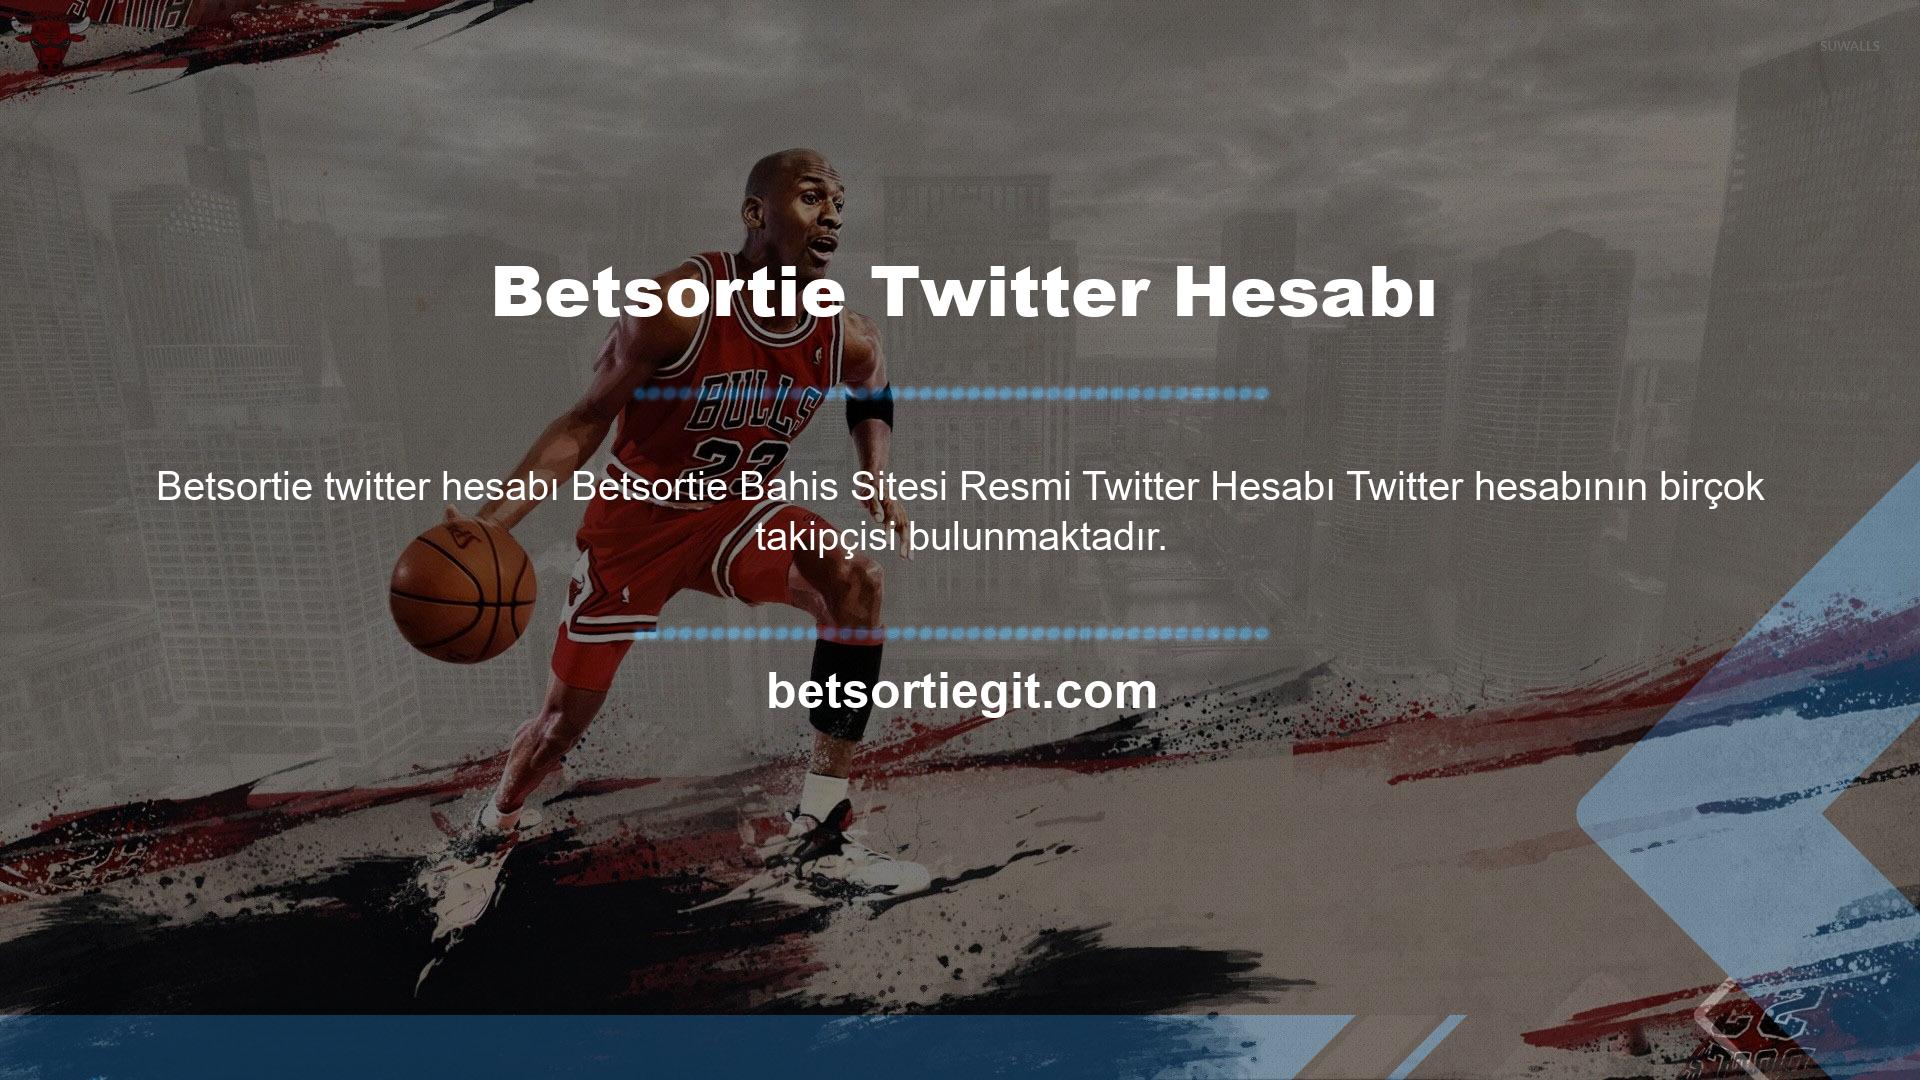 Resmi Betsortie Gaming Twitter hesabı büyük ilgi gördü